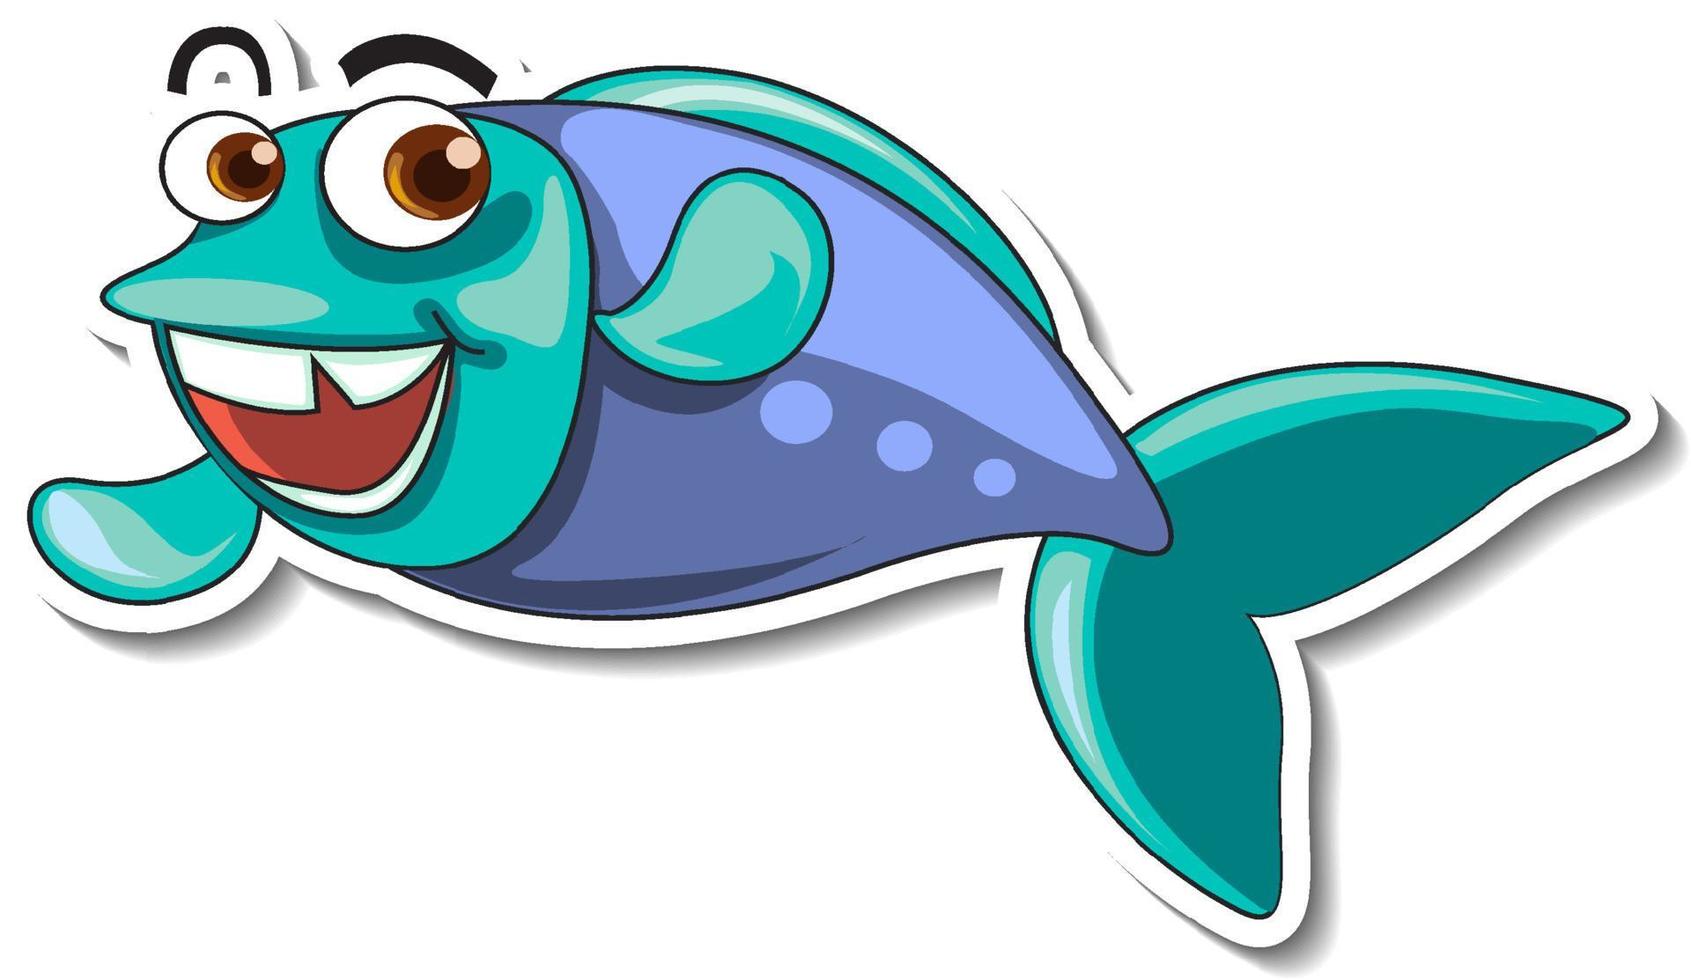 etiqueta engomada linda de la historieta del animal marino de los pescados vector